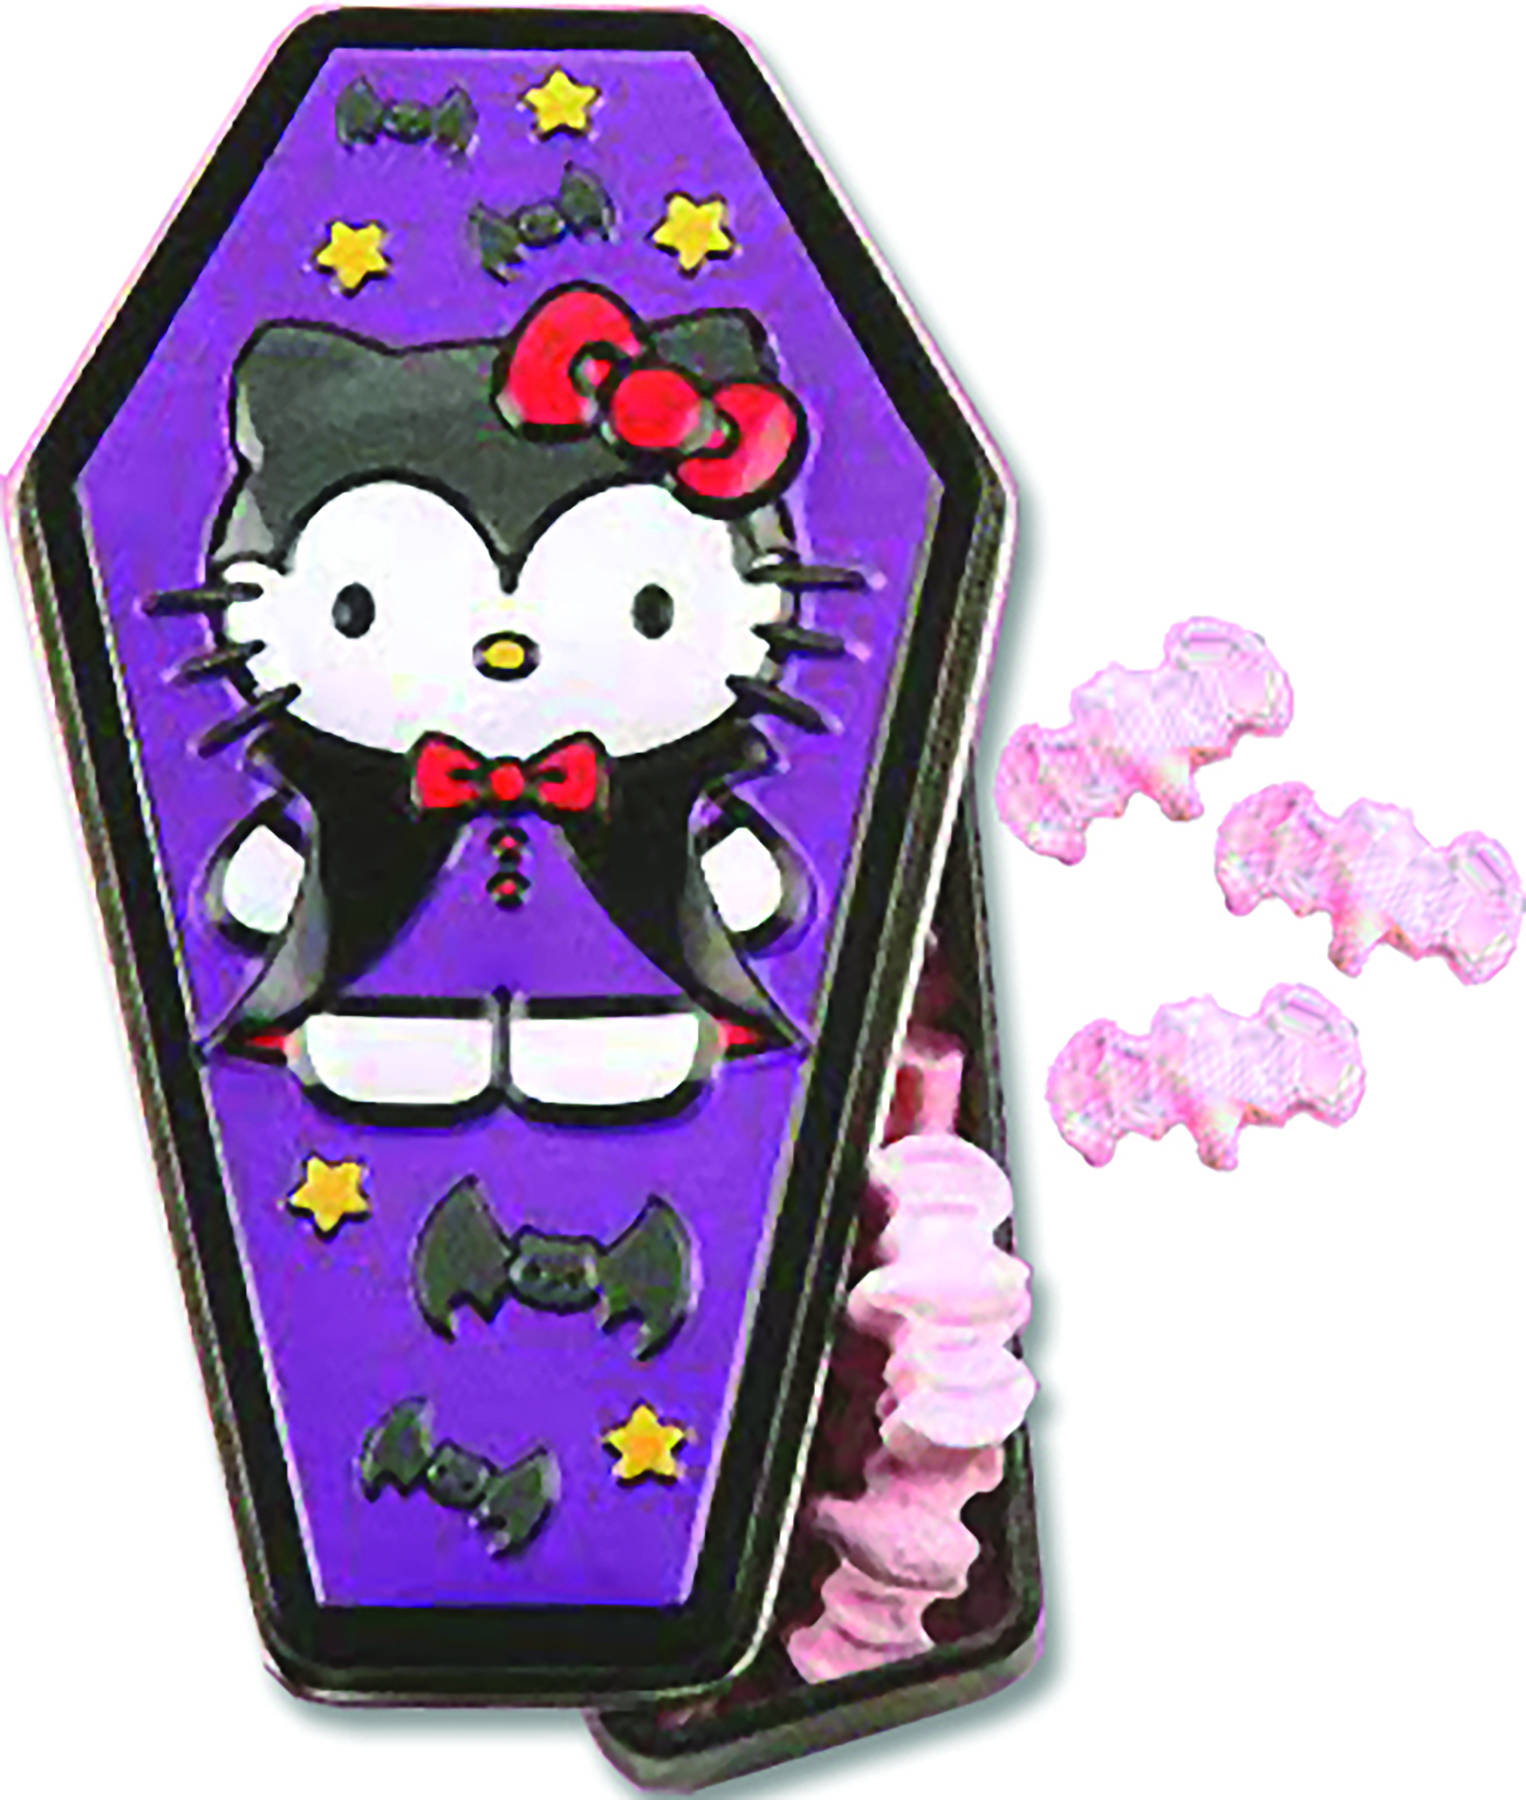 A Spooky yet Delightful Hello Kitty Halloween Episode Wallpaper